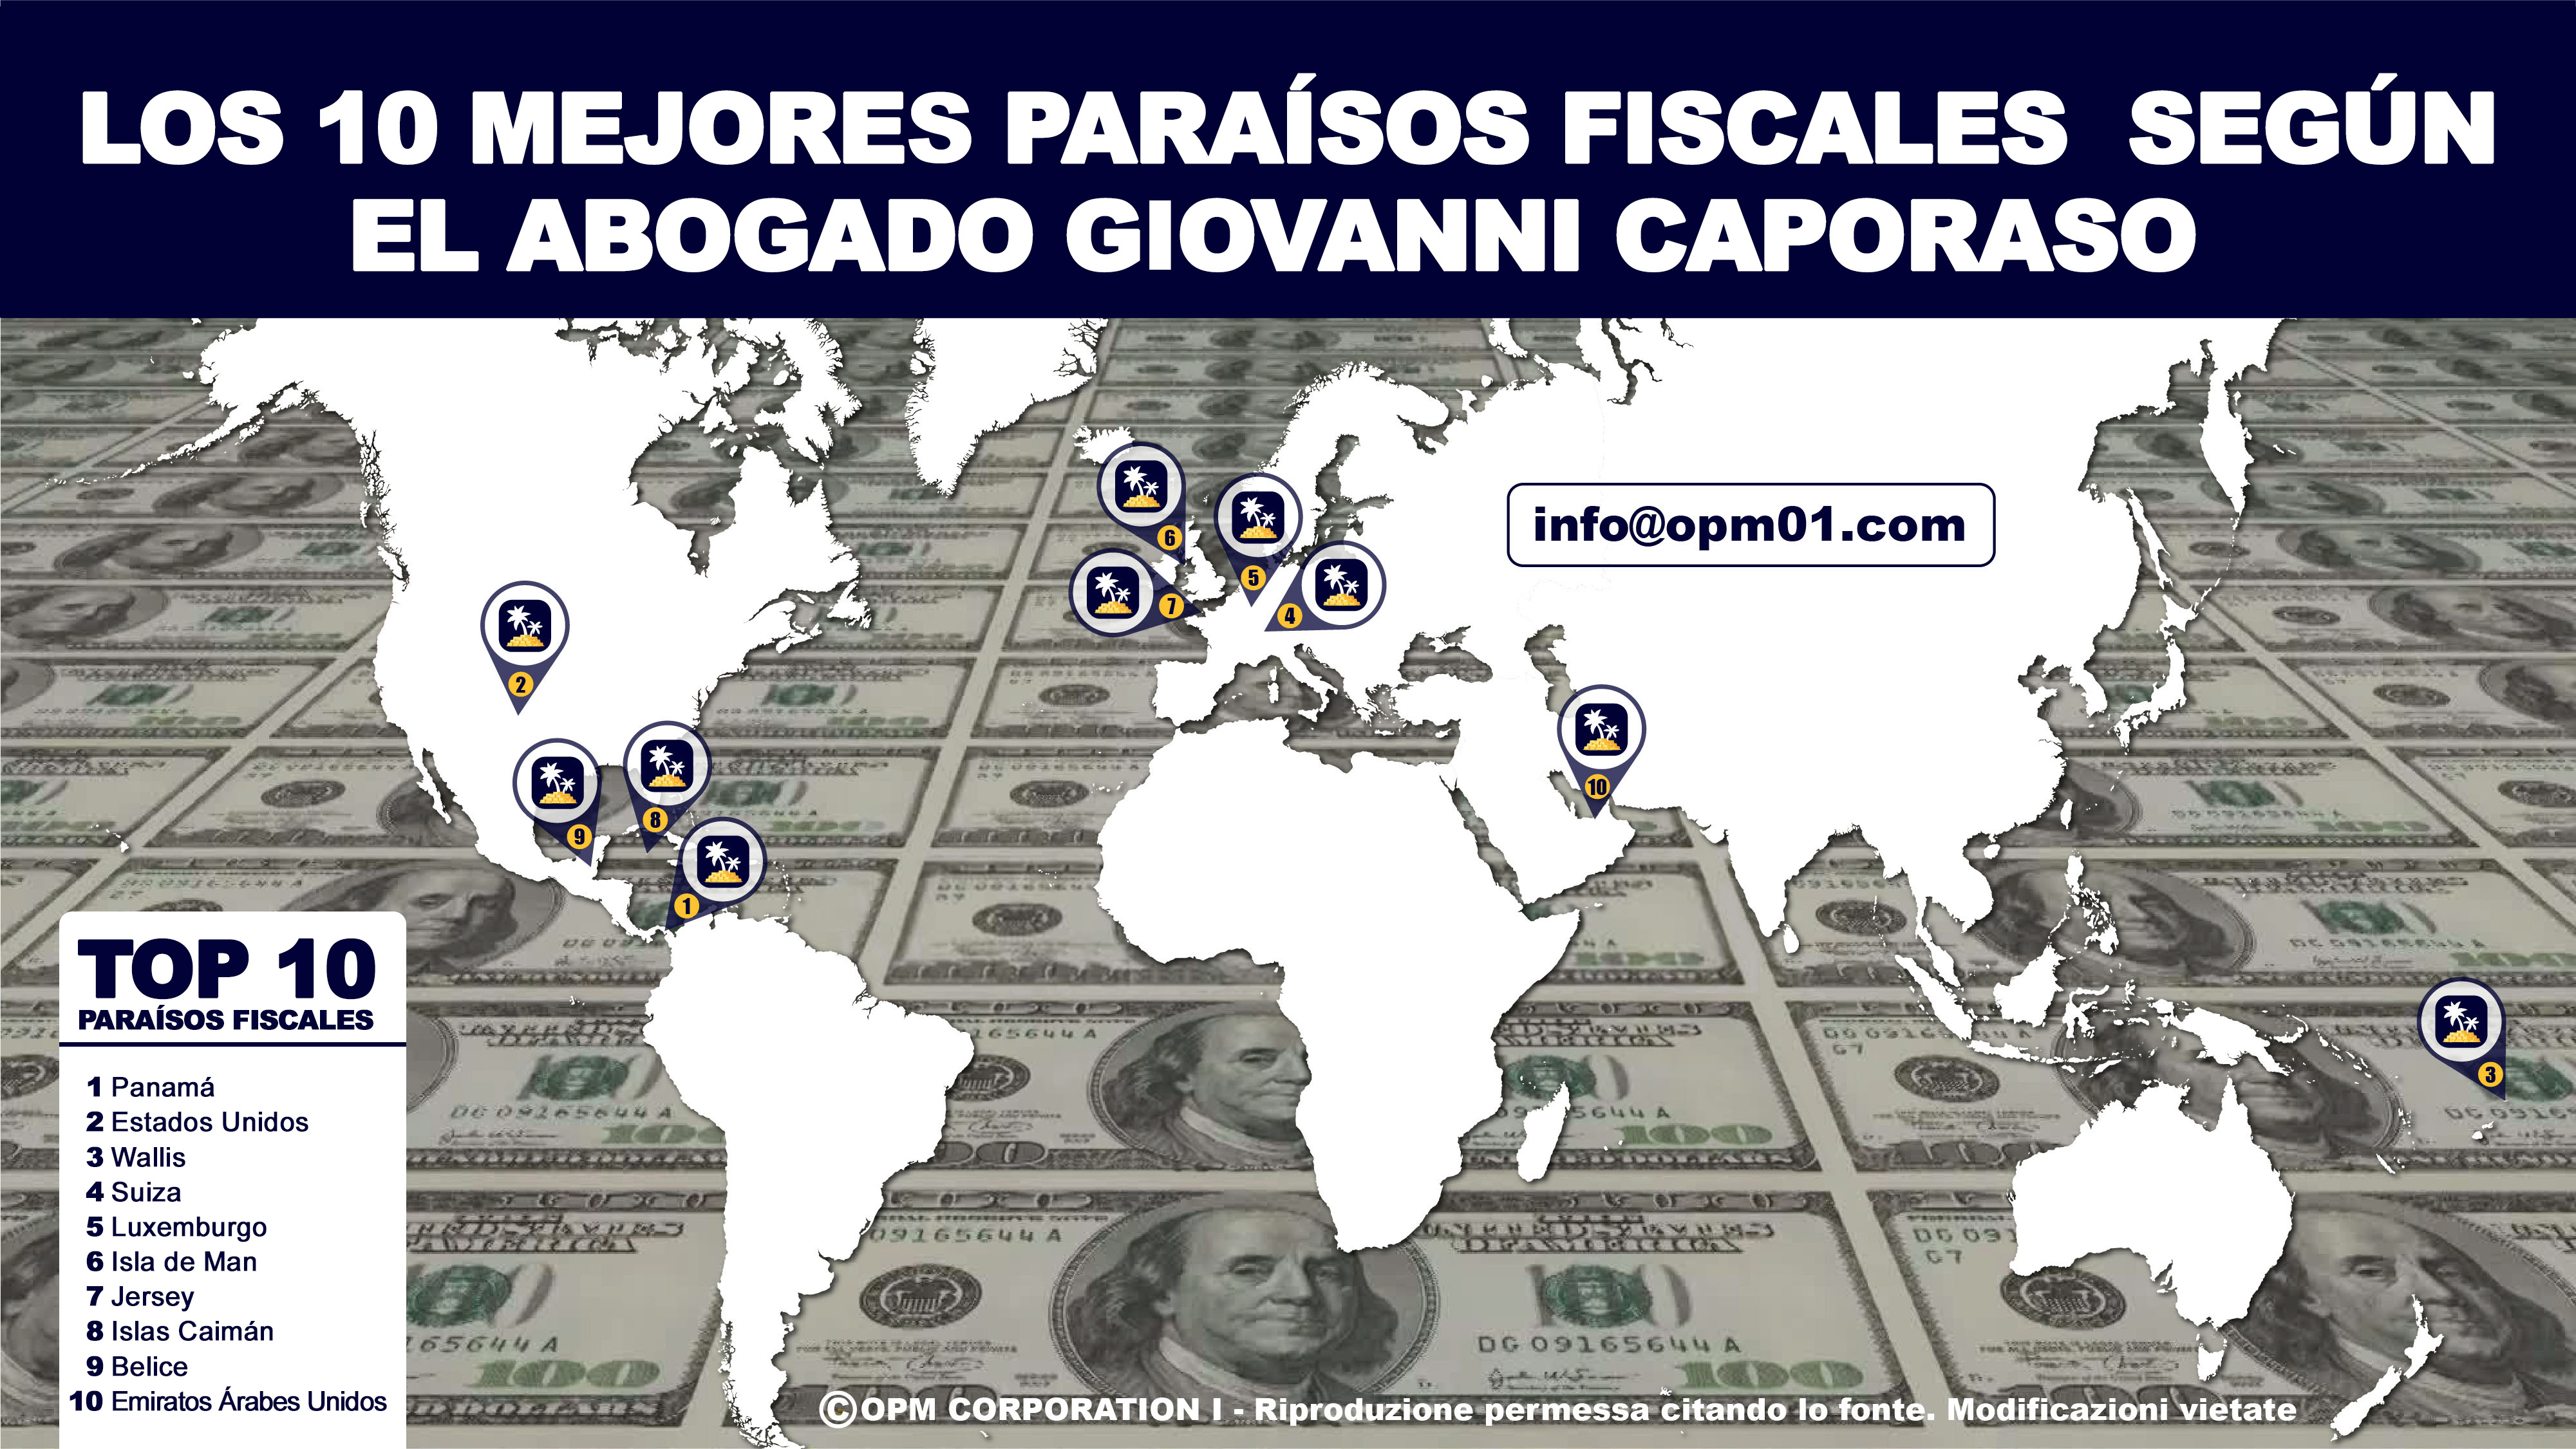 Los 10 mejores paraísos fiscales